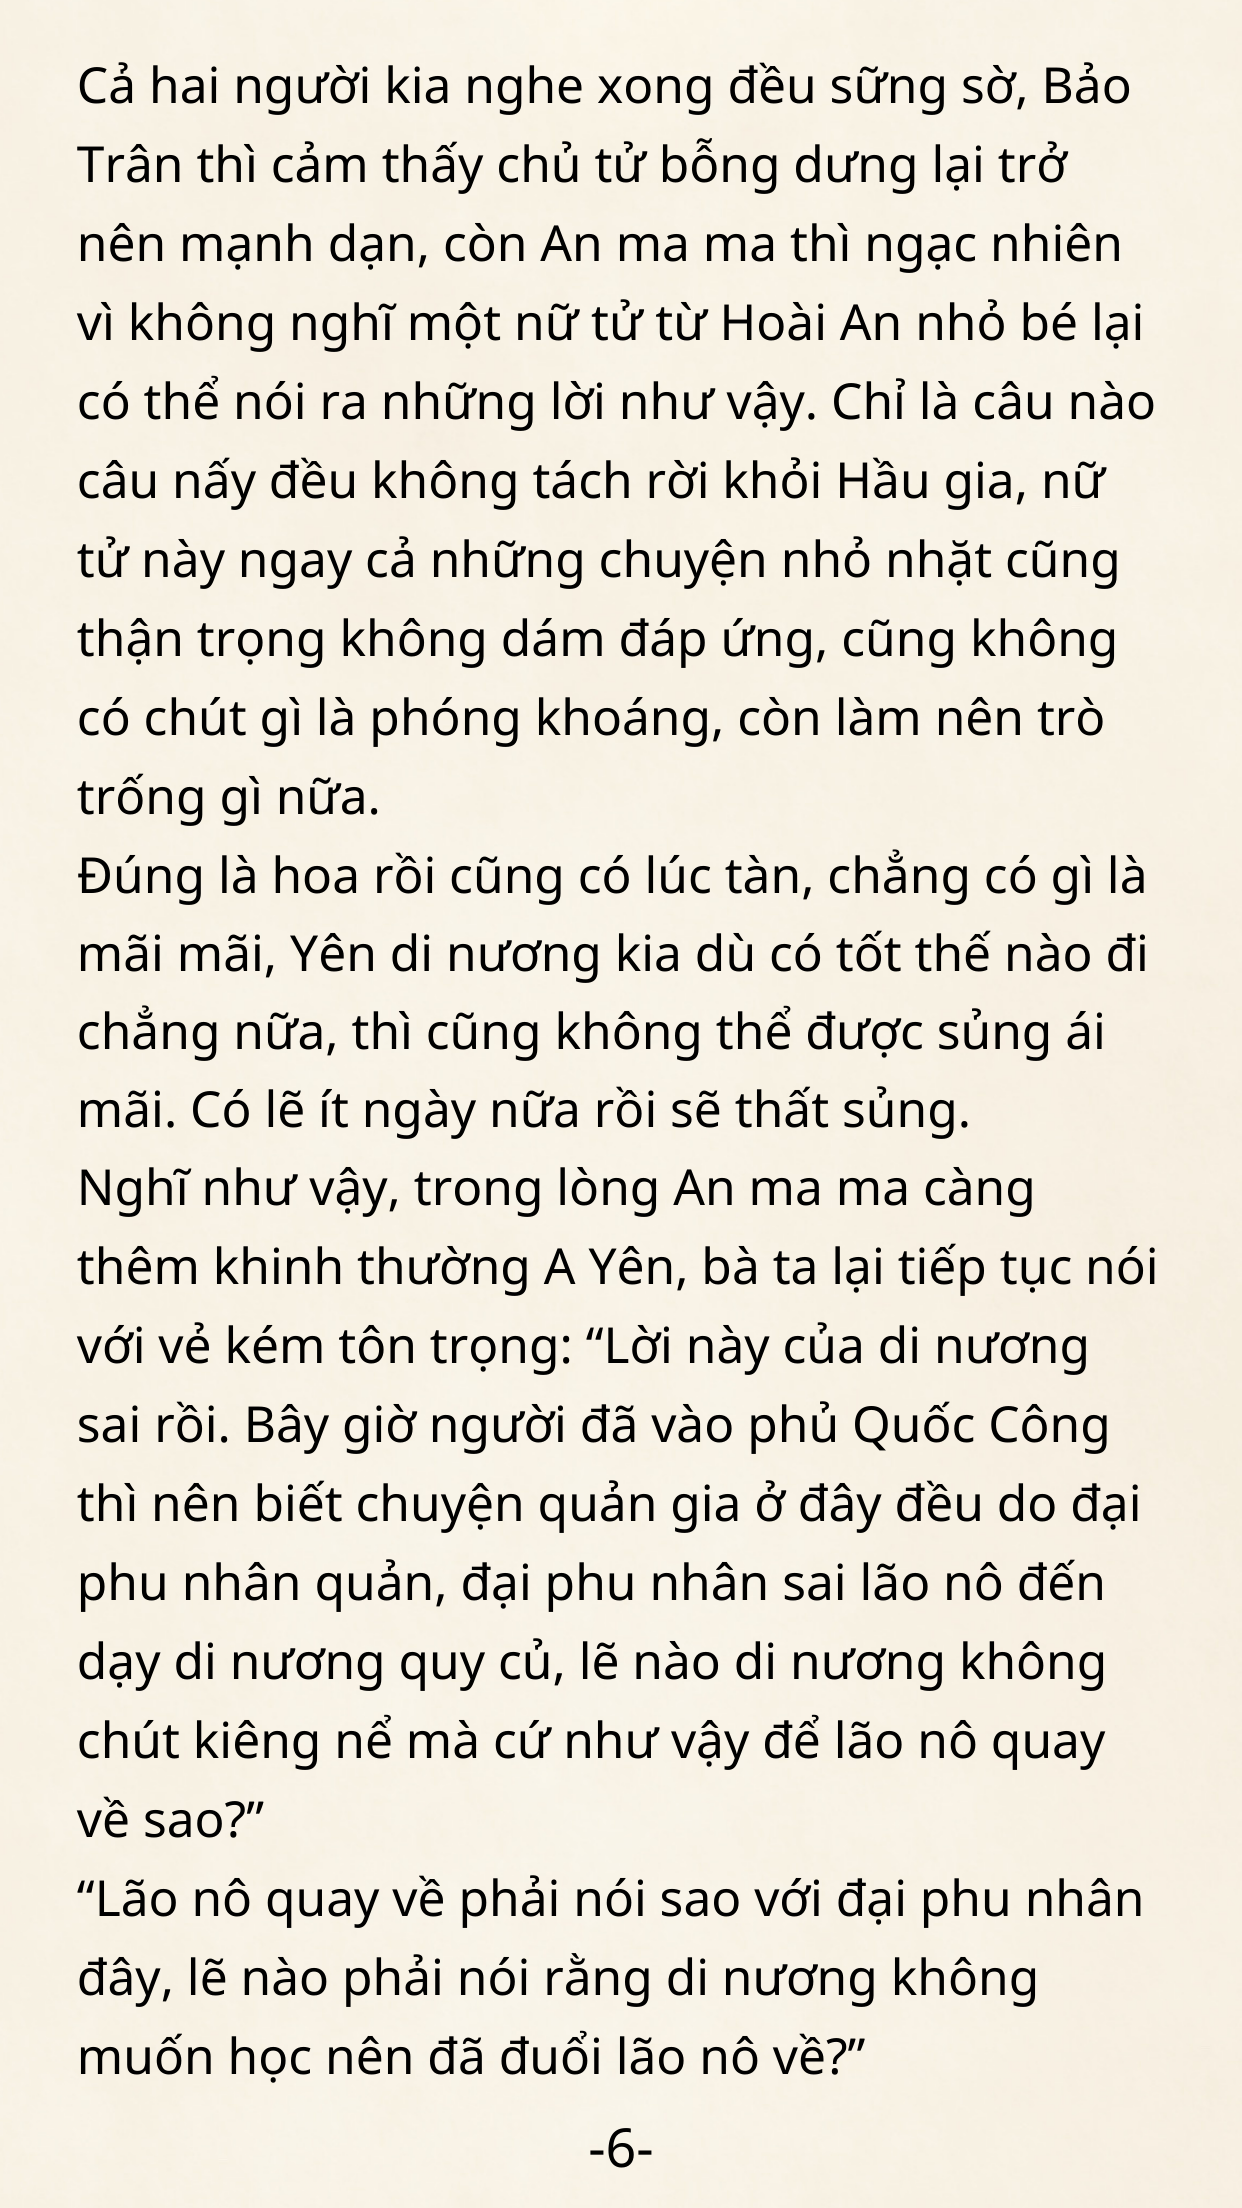 Dong-cung-kieu-tuoc-37-6.png